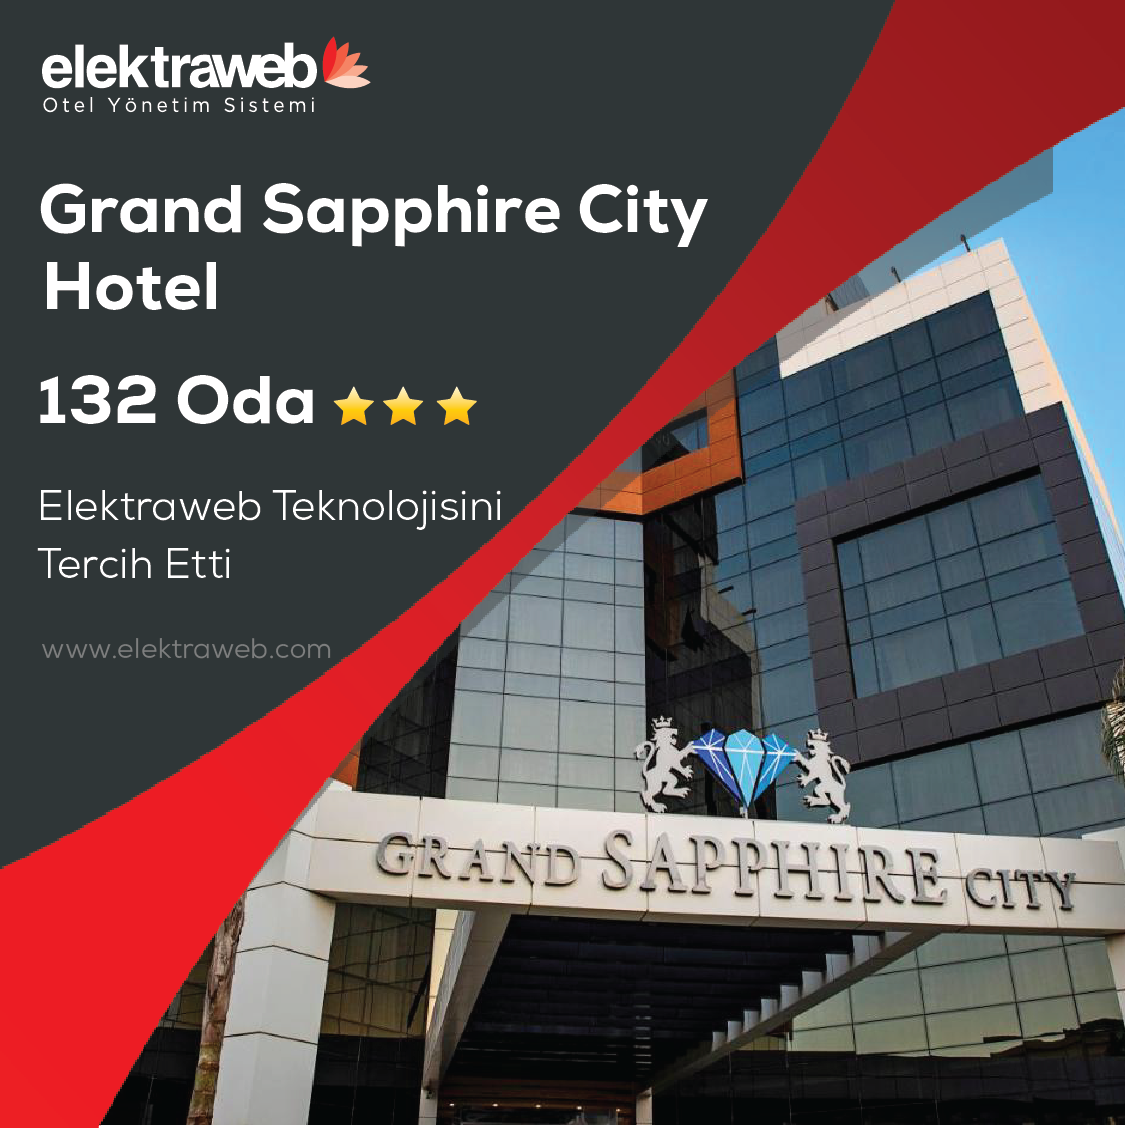 Grand Sapphire City Hotel Artık Elektrawebli